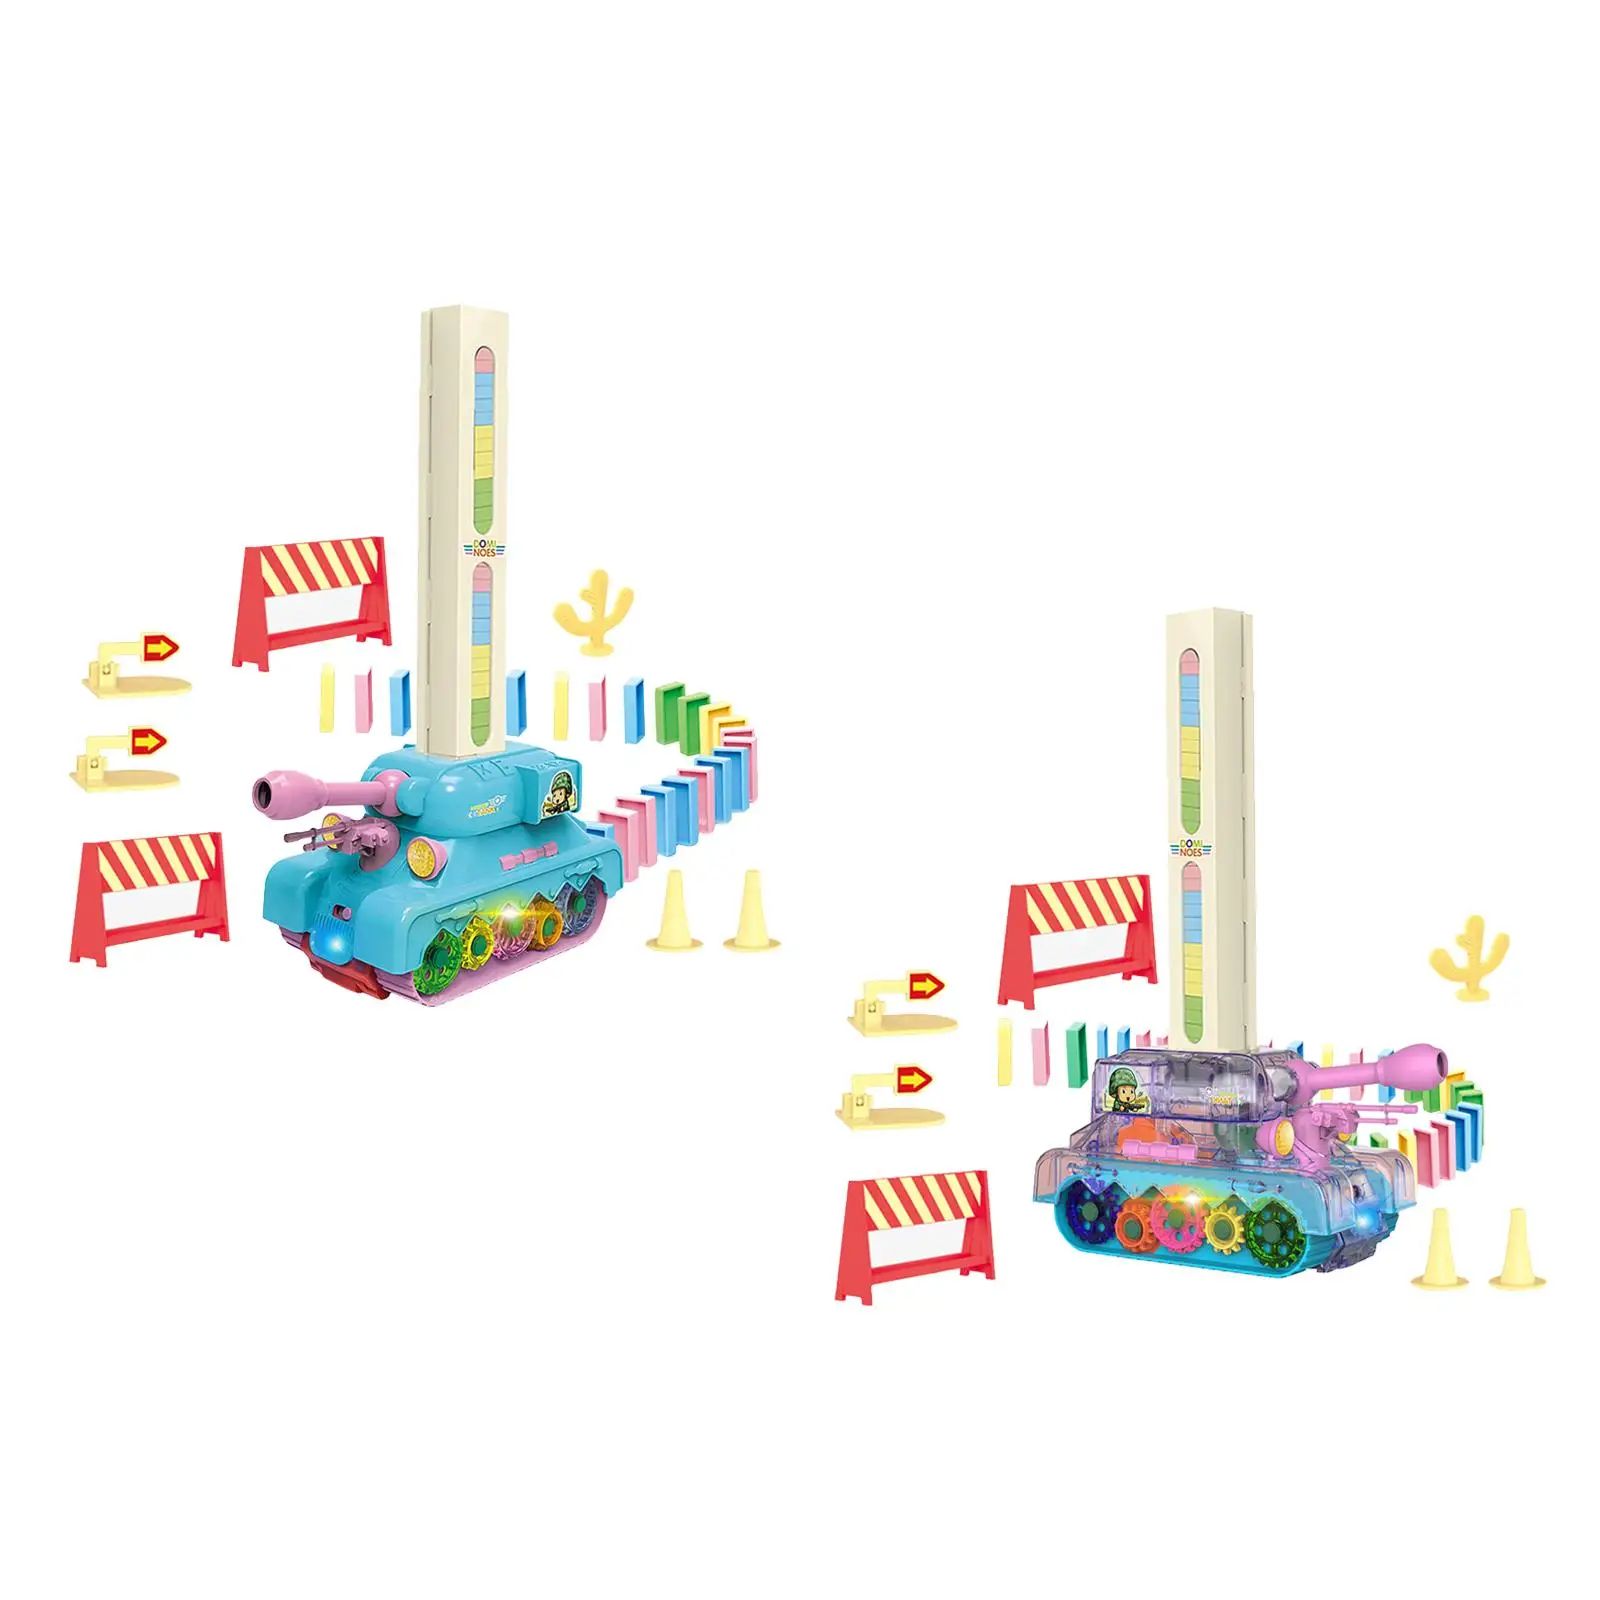 Creative Laying Toy Tank Set Laying Brick Blocks Games for Girls Kids Boys